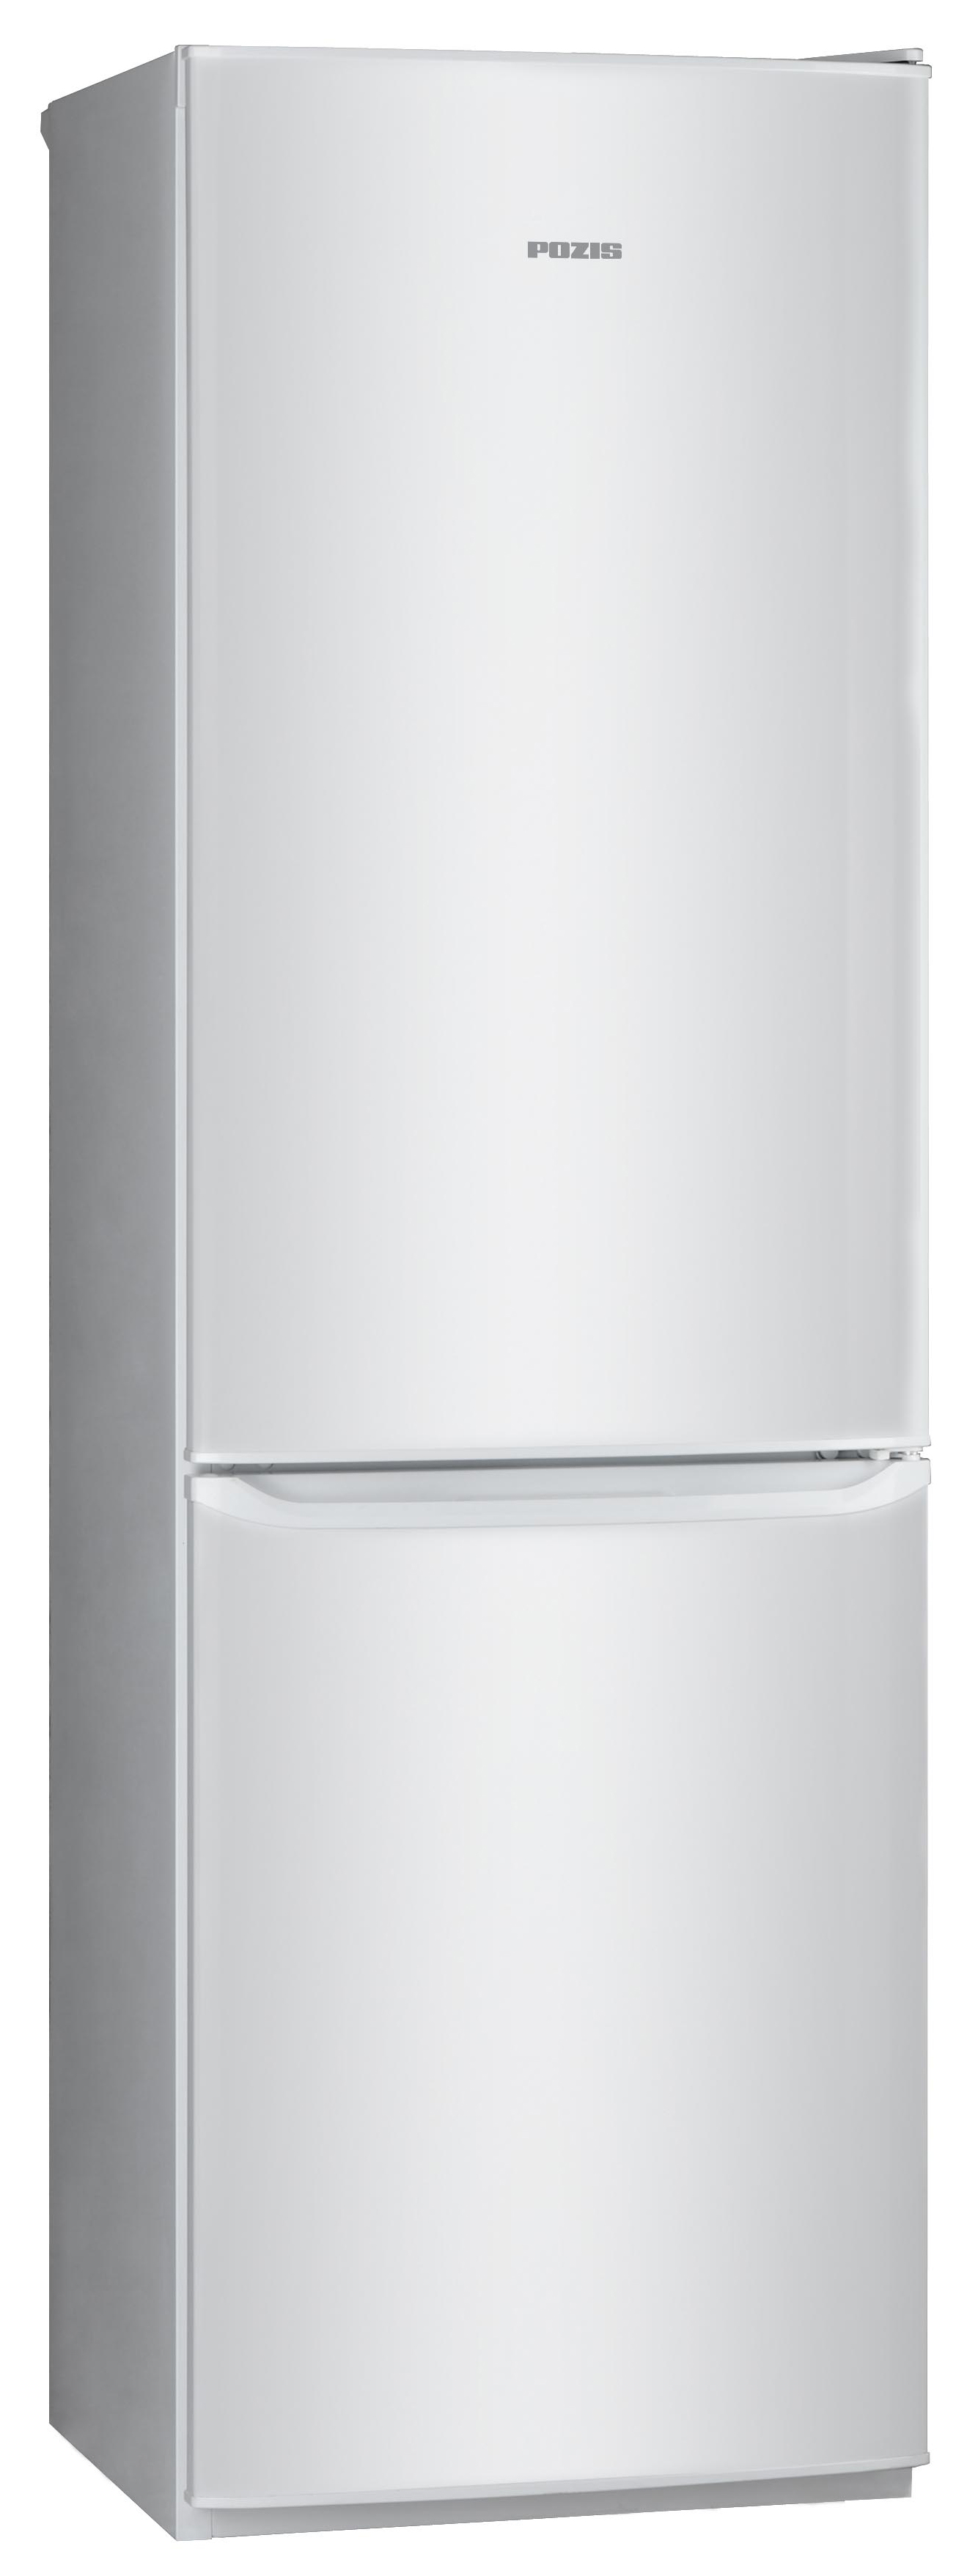 Холодильник POZIS RD-149 серебристый холодильник pozis rk fnf 172